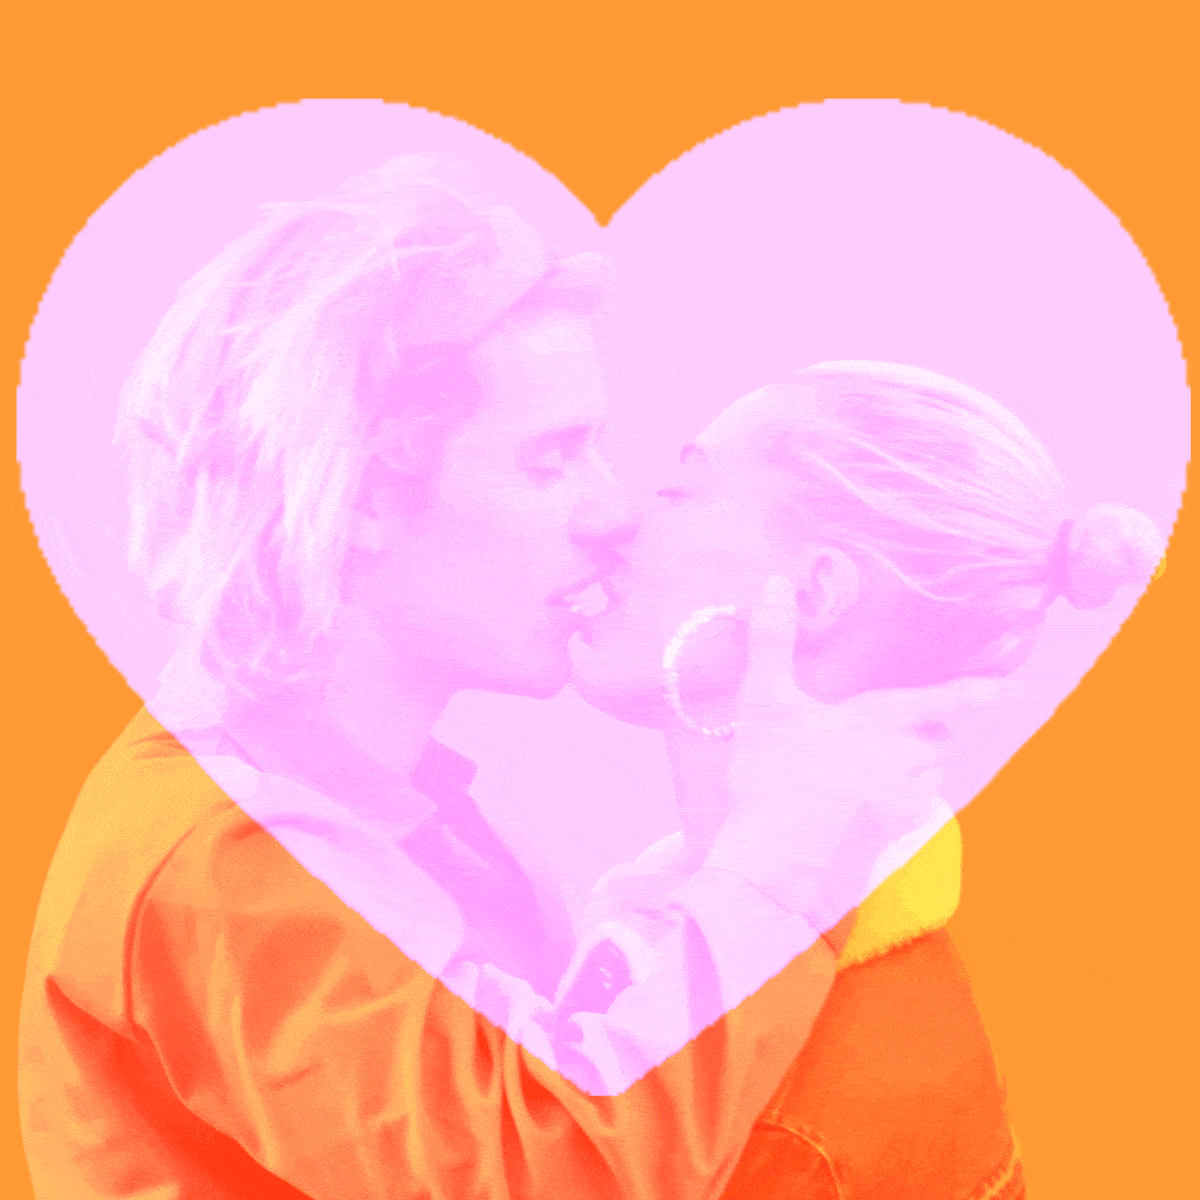 Heart, Love, Pink, Orange, Valentine's day, Romance, Peach, Illustration, Gesture, 